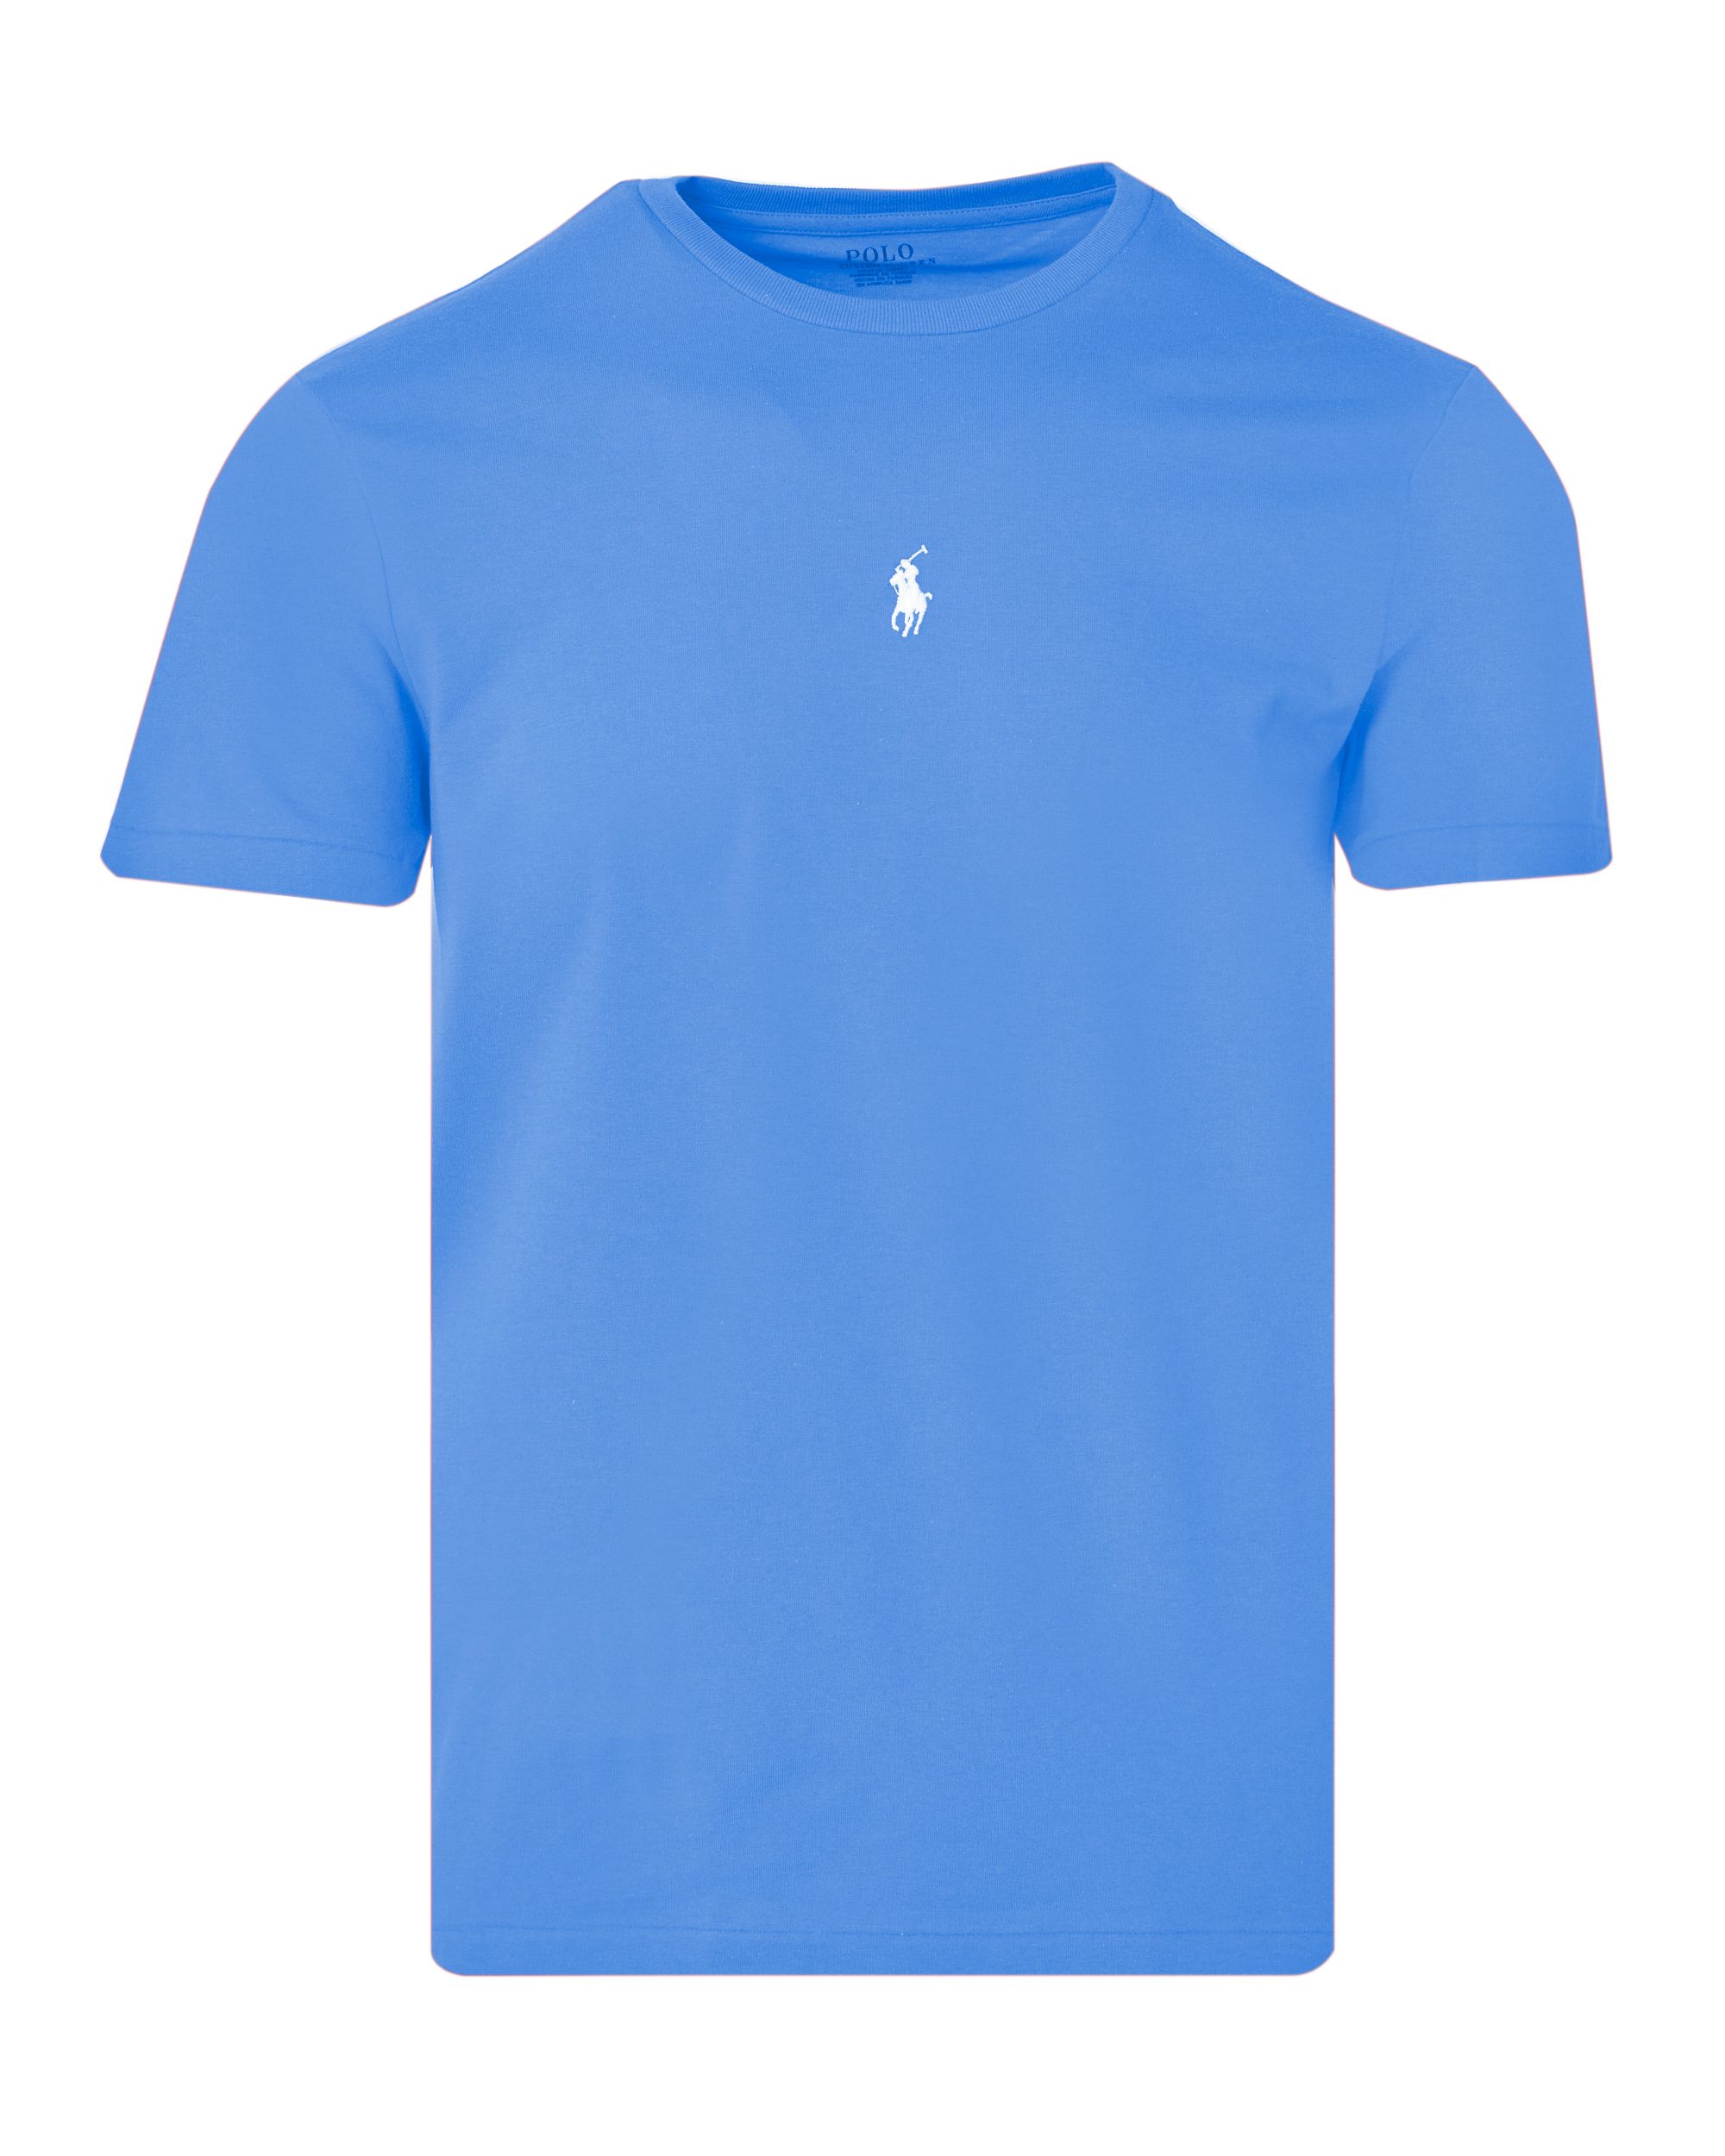 Polo Ralph Lauren T-shirt KM Blauw 083472-001-L